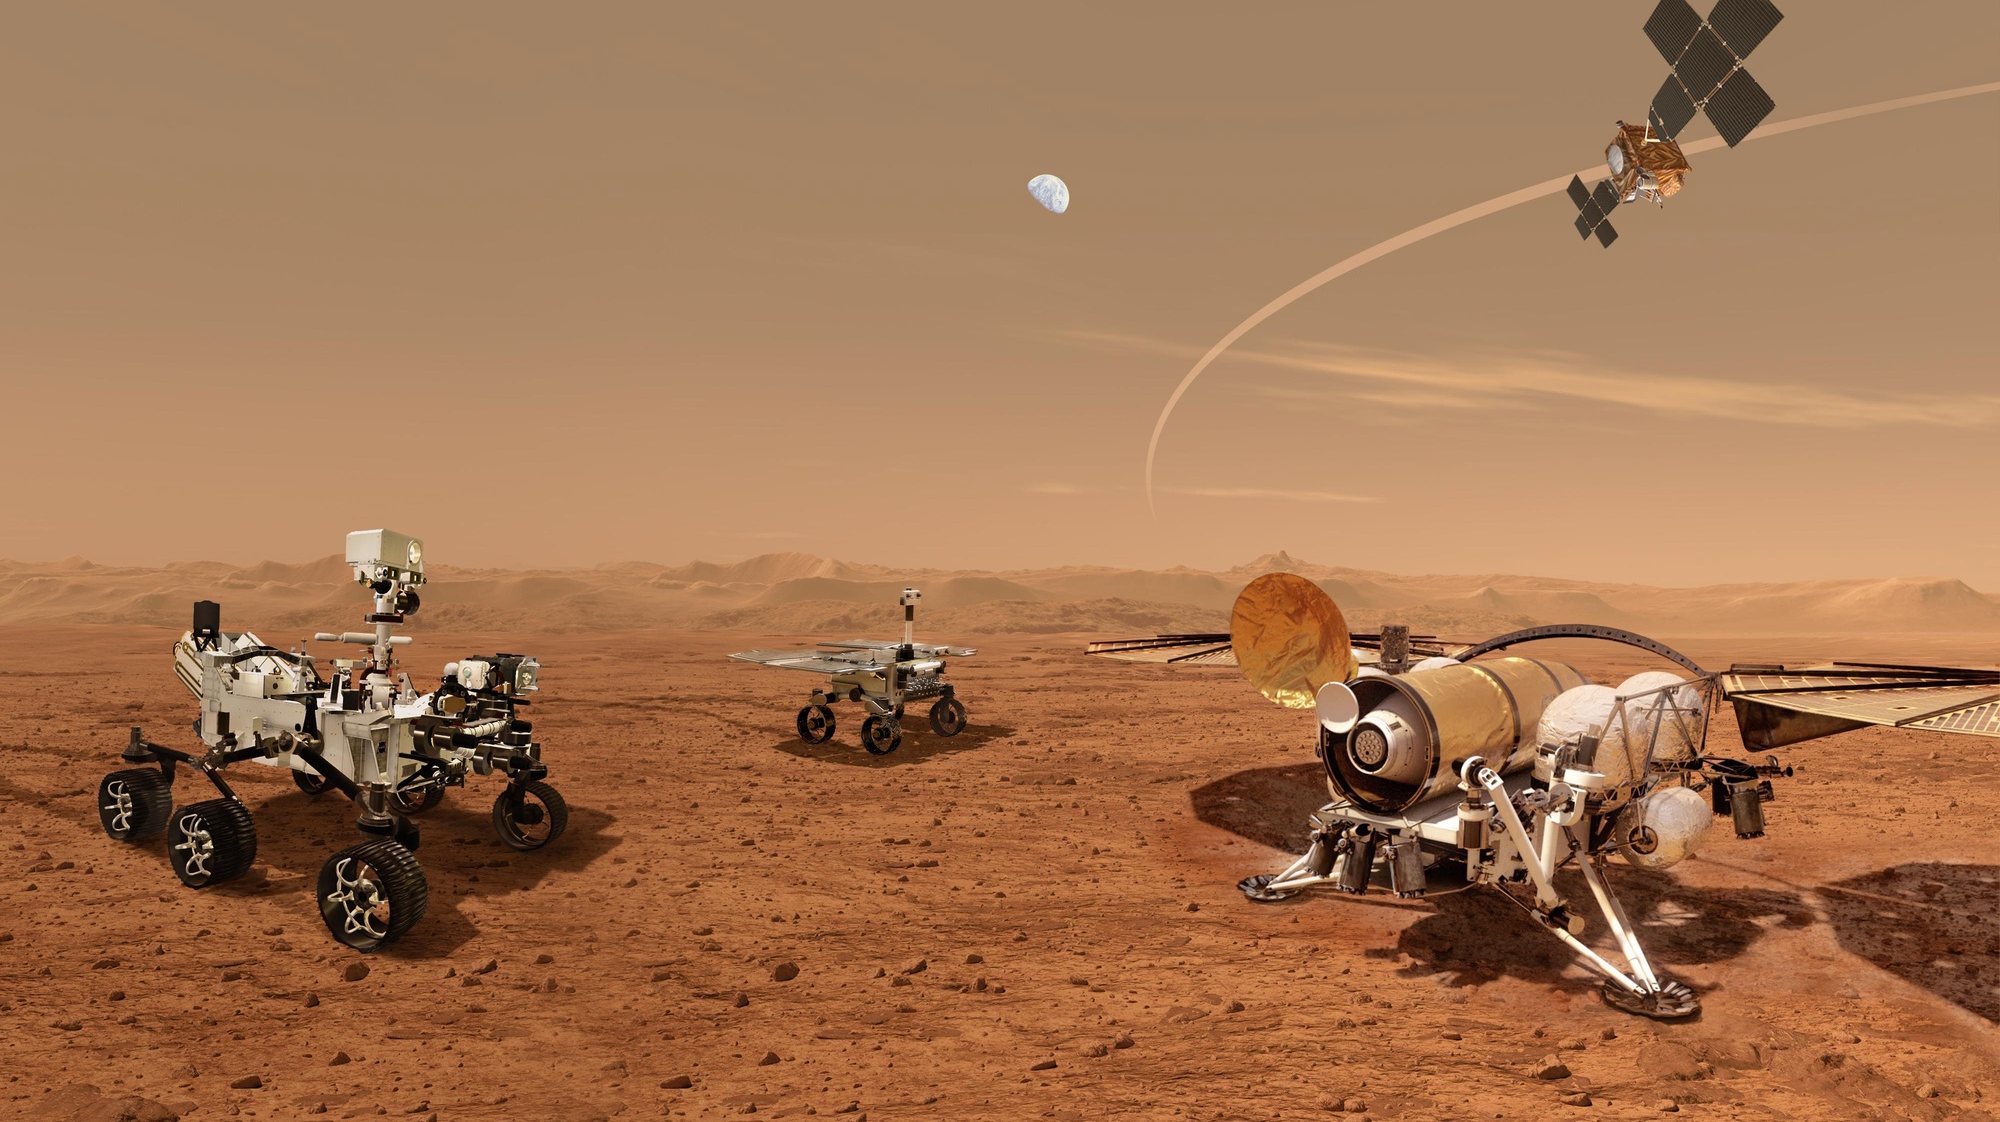 Uma imagem disponibilizada pela NASA mostra uma ilustração de robôs a trabalhar numa superfície em Marte